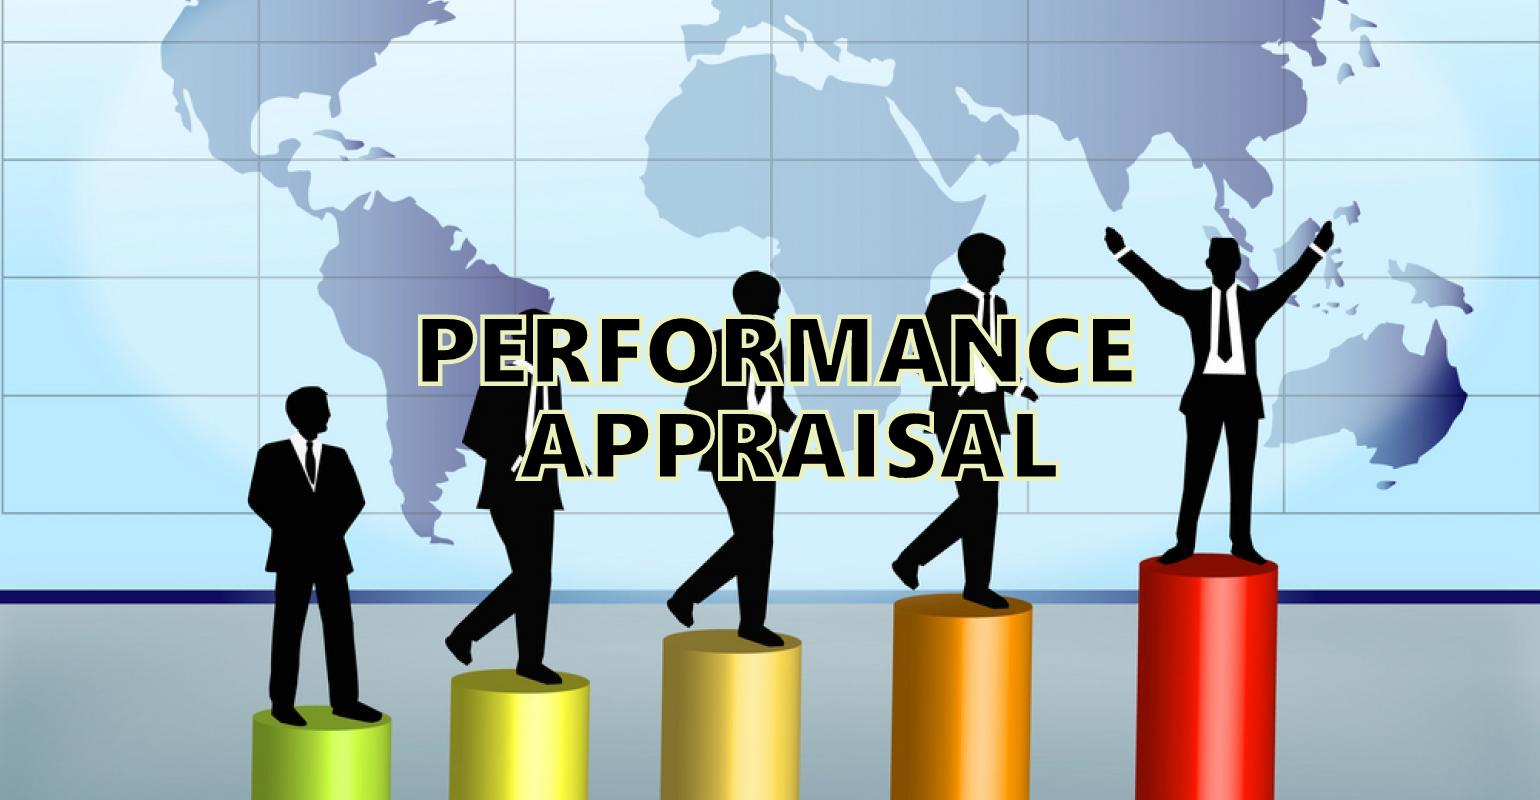 Performance Appraisal Software Market'